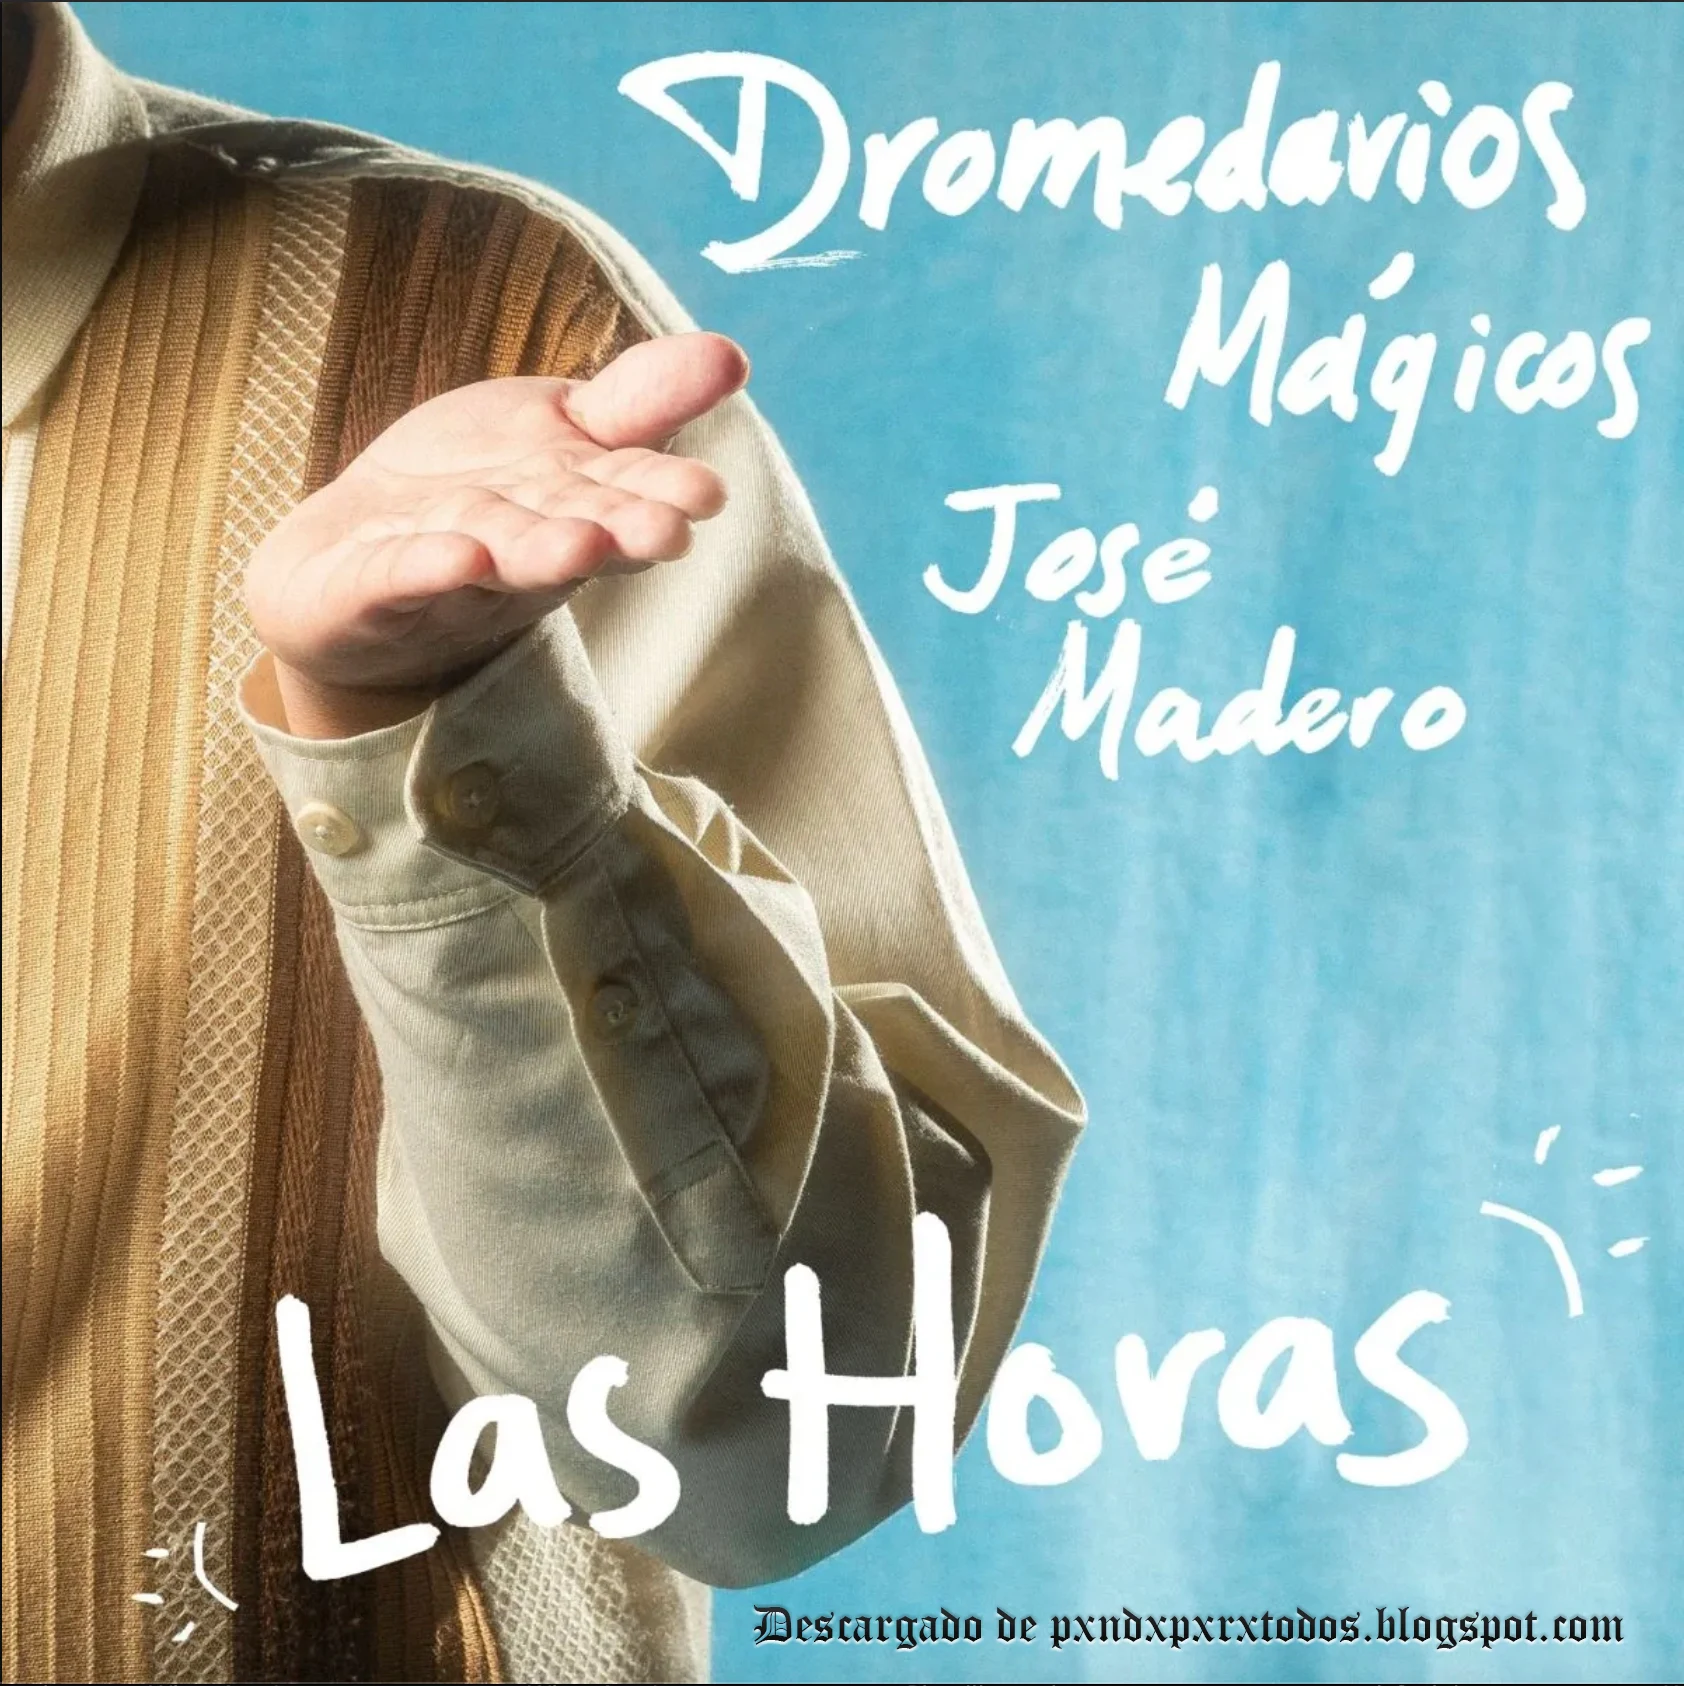 Las Horas - Dromedarios Mágicos, José Madero Vizcaíno